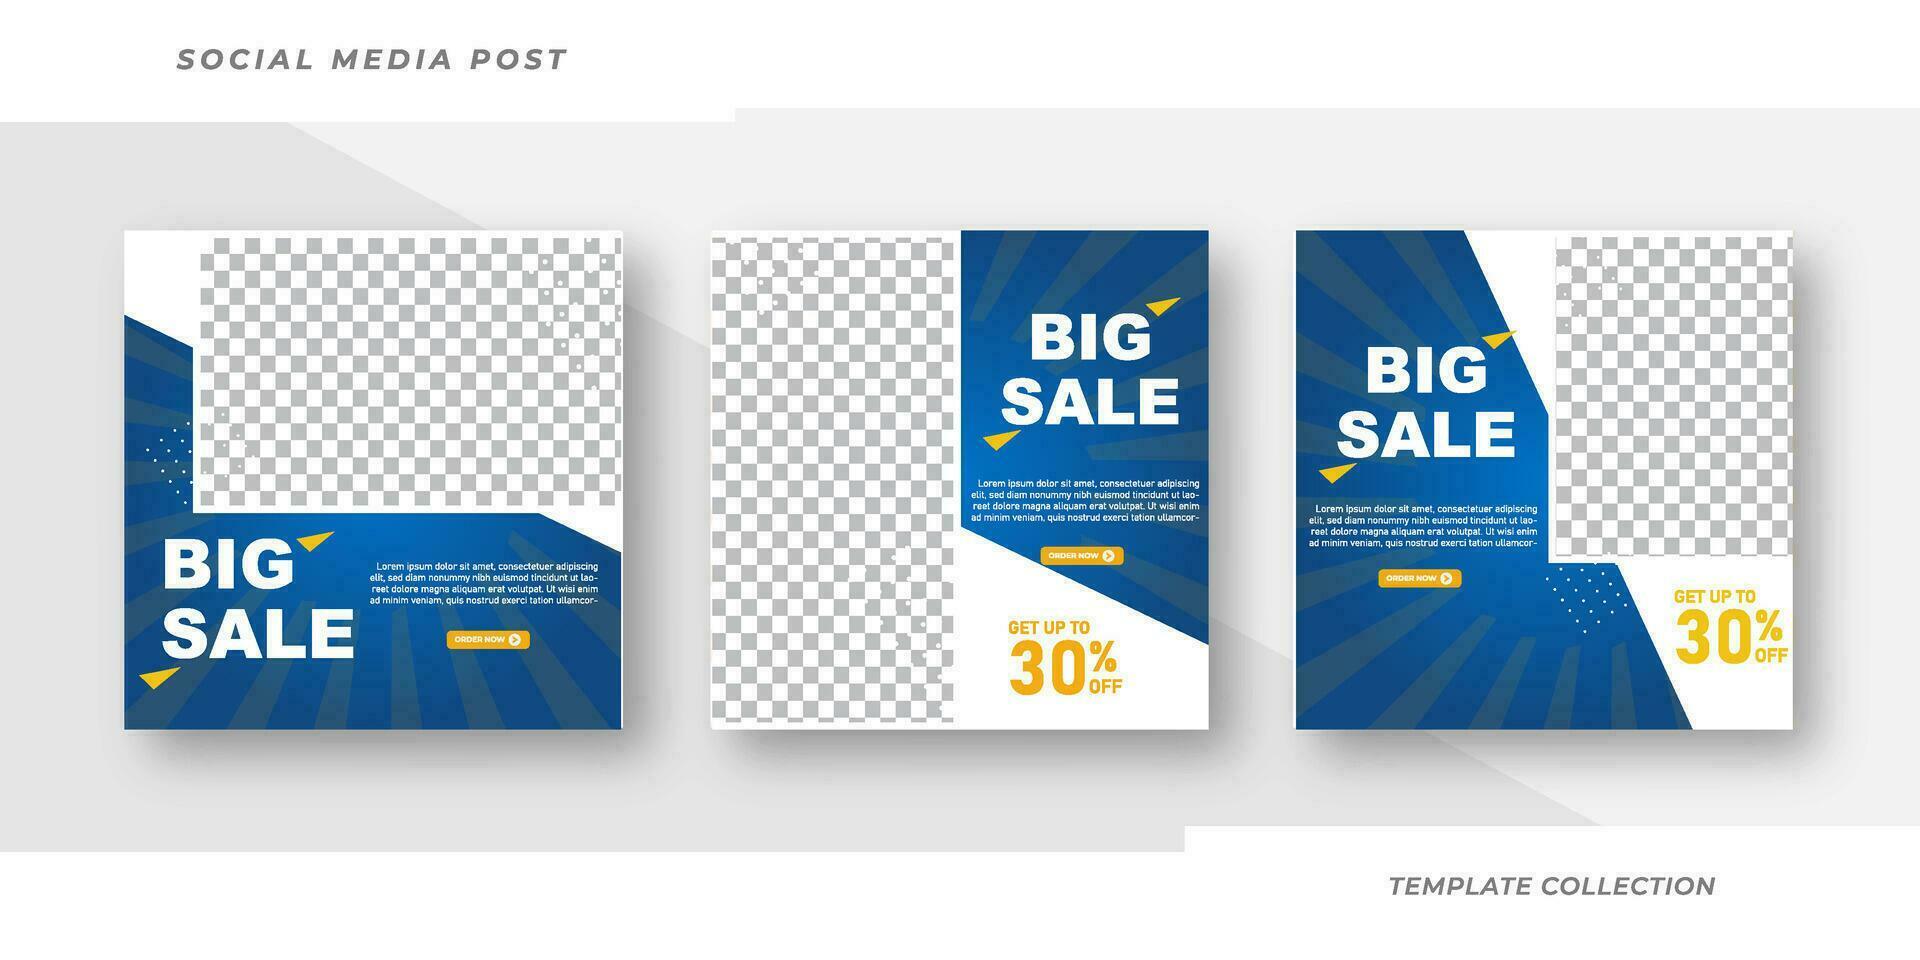 Big sale post design template background banner template design. Vector illustration